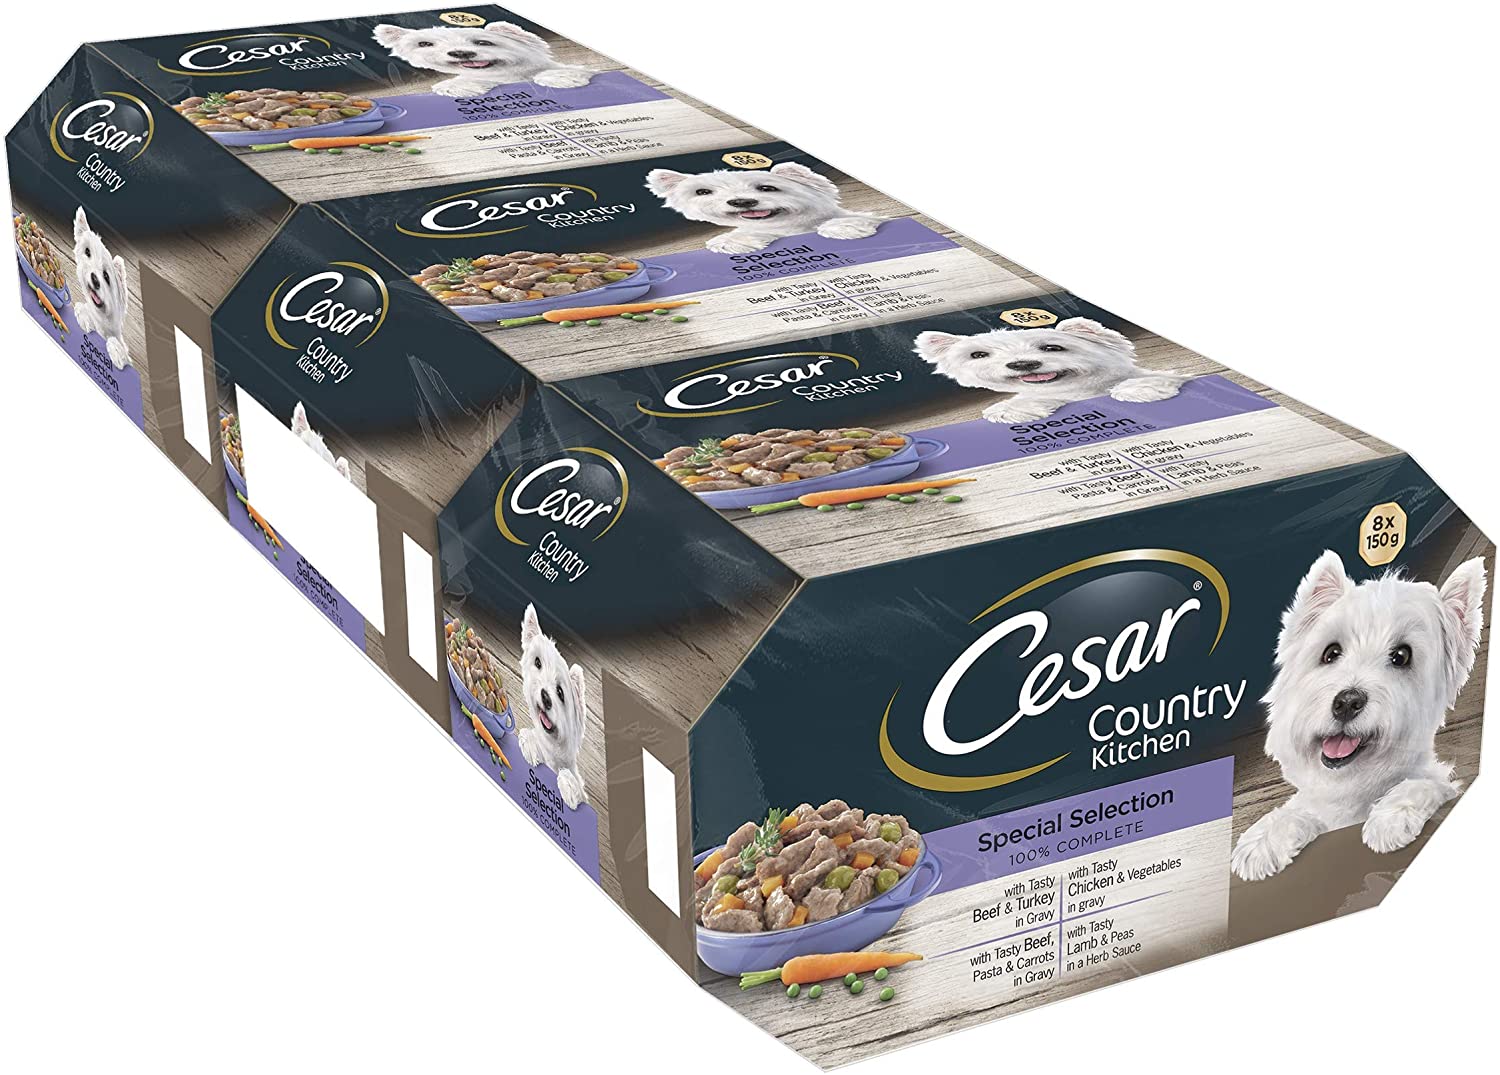  Cesar Country Kitchen - Comida para perros, selección especial, 8 x 150 g, paquete de 3 